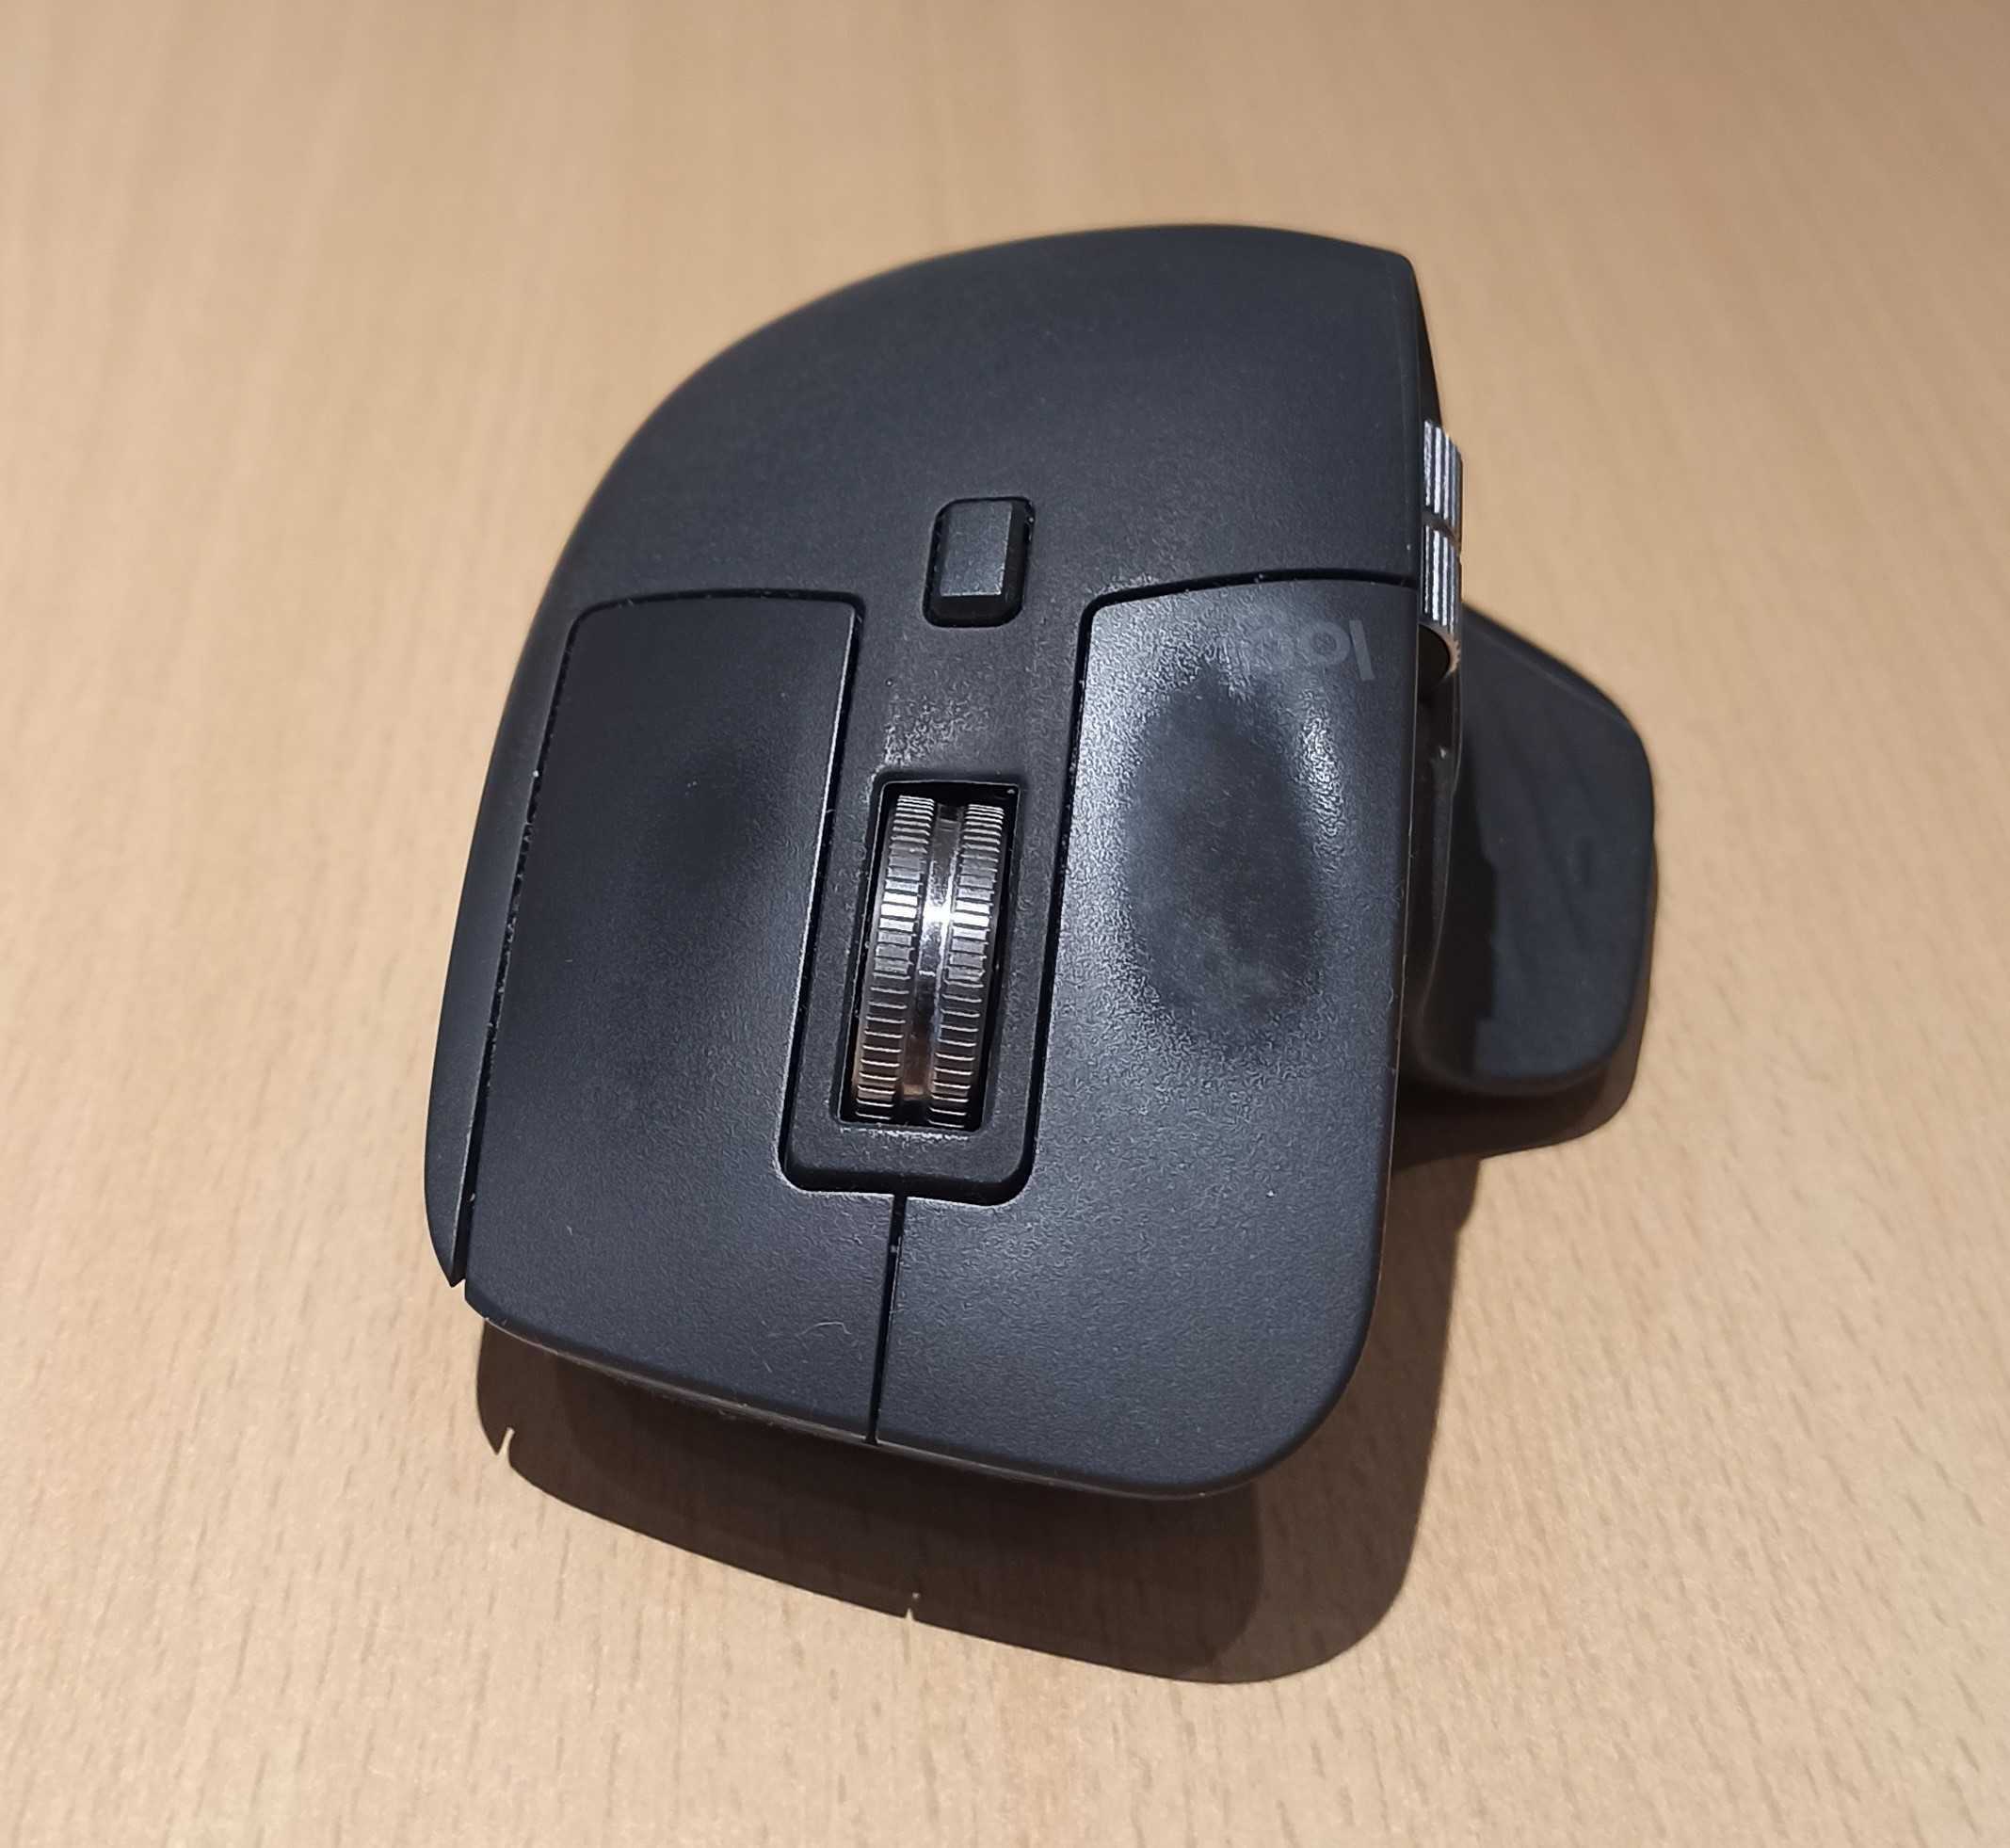 Мишка бездротова ігрова LOGITECH MX Master 3 Wireless